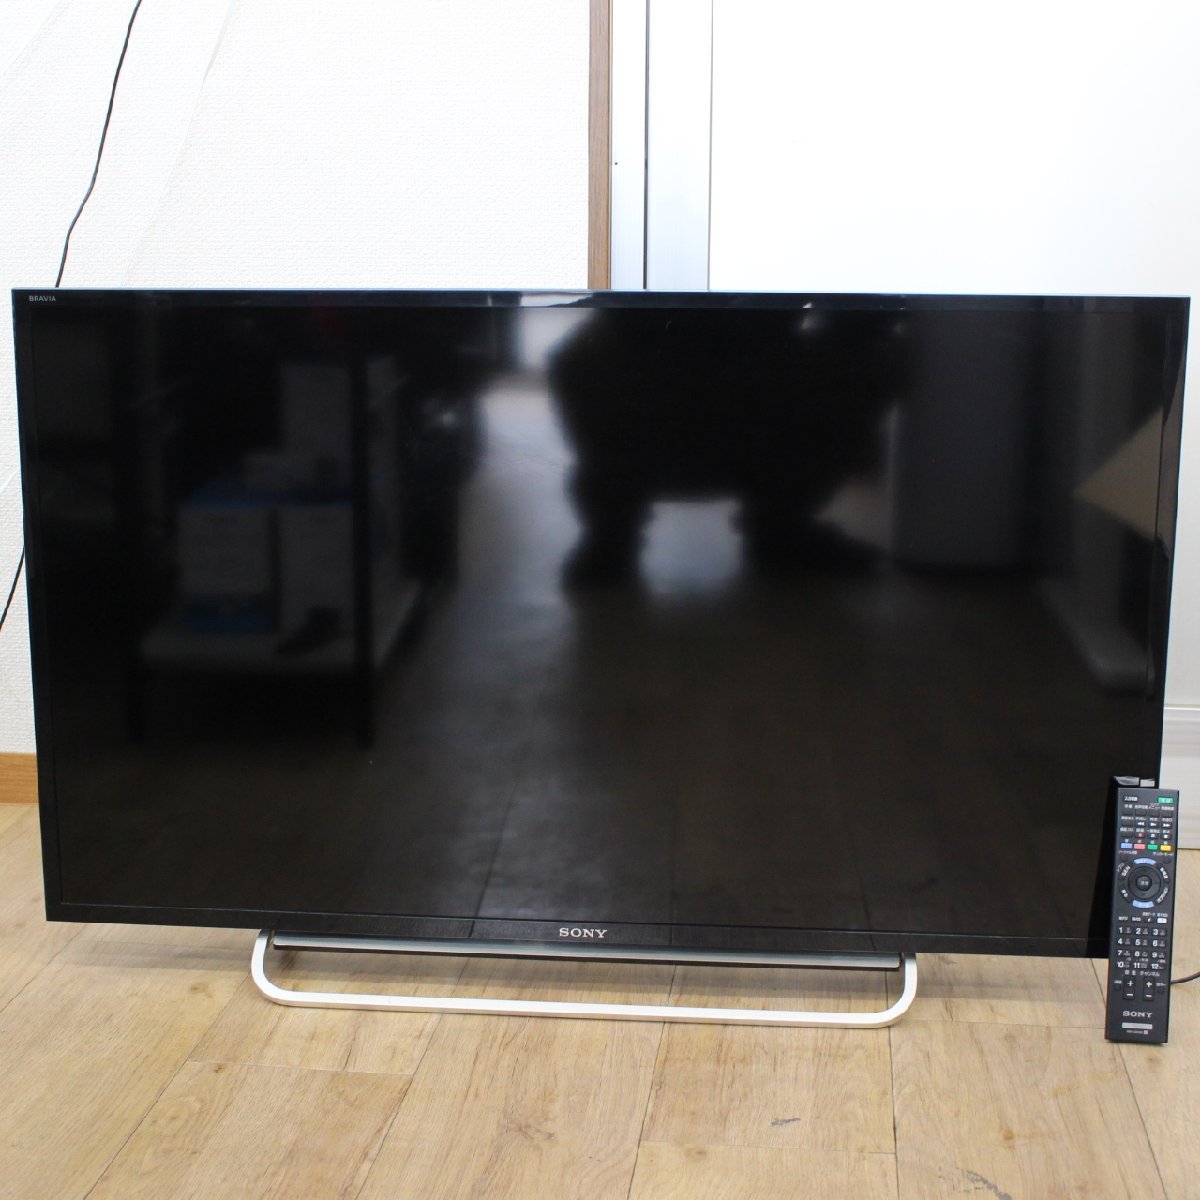 東京都中野区にて ソニー 液晶テレビ KDL-40W600B 2014年製 を出張買取させて頂きました。